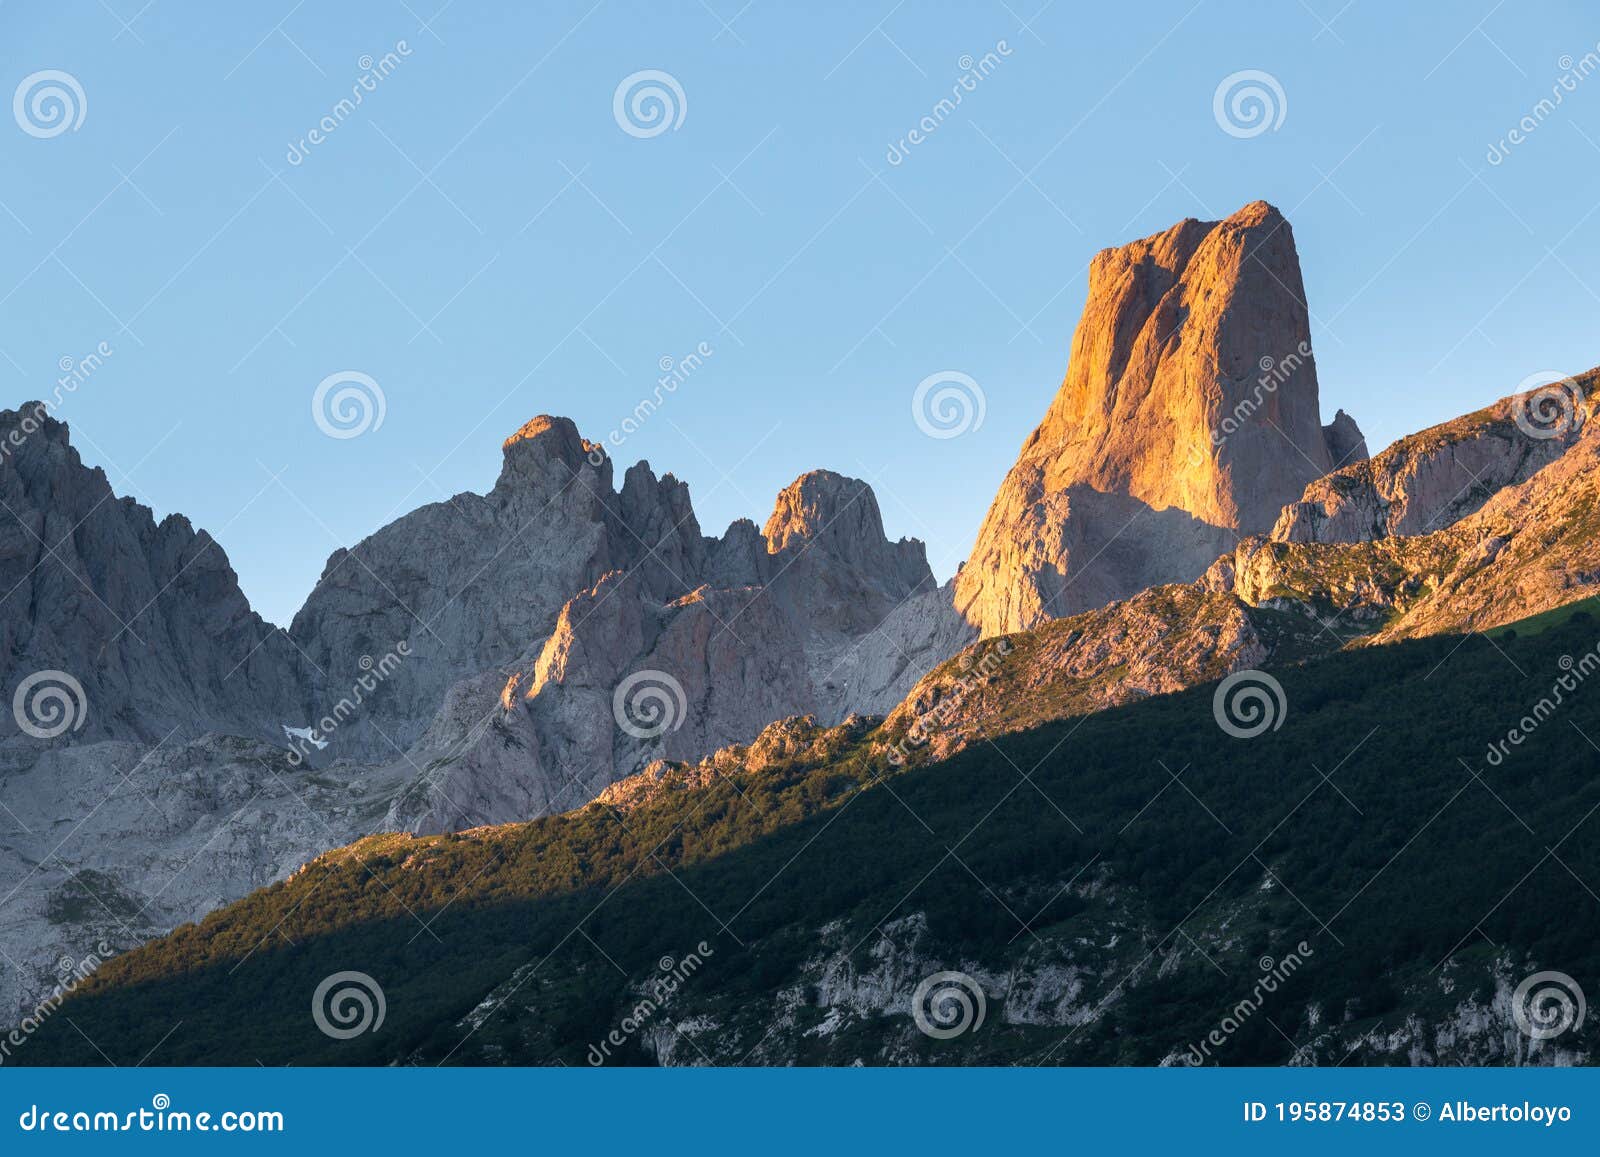 naranjo de bulnes, picu urriellu, from camarmena village at sunrise in picos de europa national park, asturias in spain